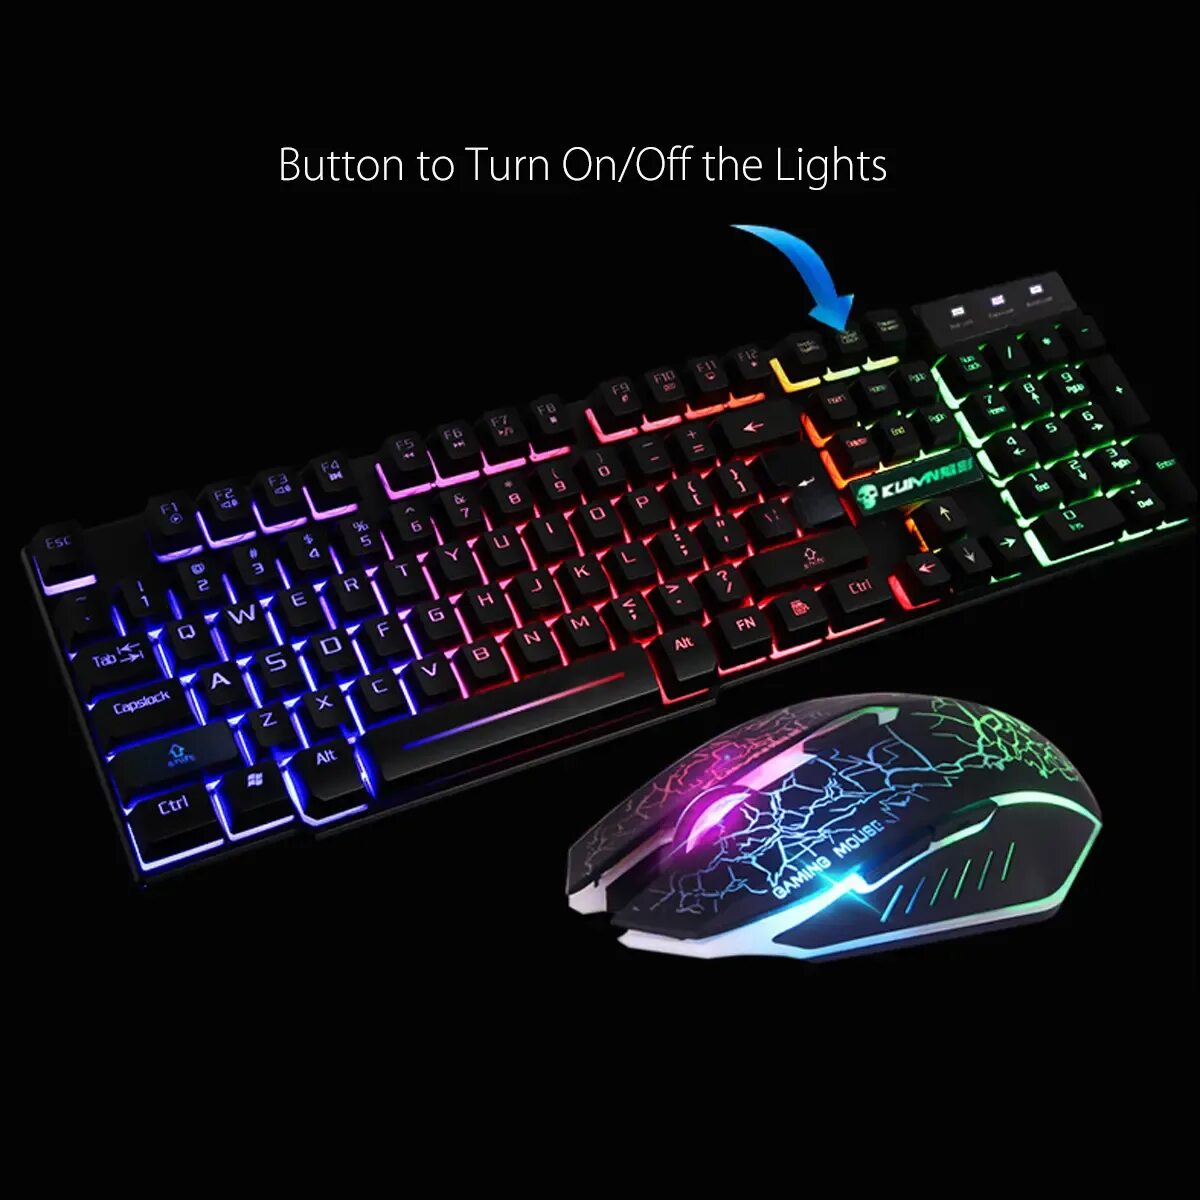 Компьютерные мыши и клавиатуры. Клавиатура мышка коврик Rainbow Light t5. Комплекты клавиатура и мышь с подсветкой РГБ. Игровая клавиатура с подсветкой и мышь. Беспроводная светящаяся клавиатура.